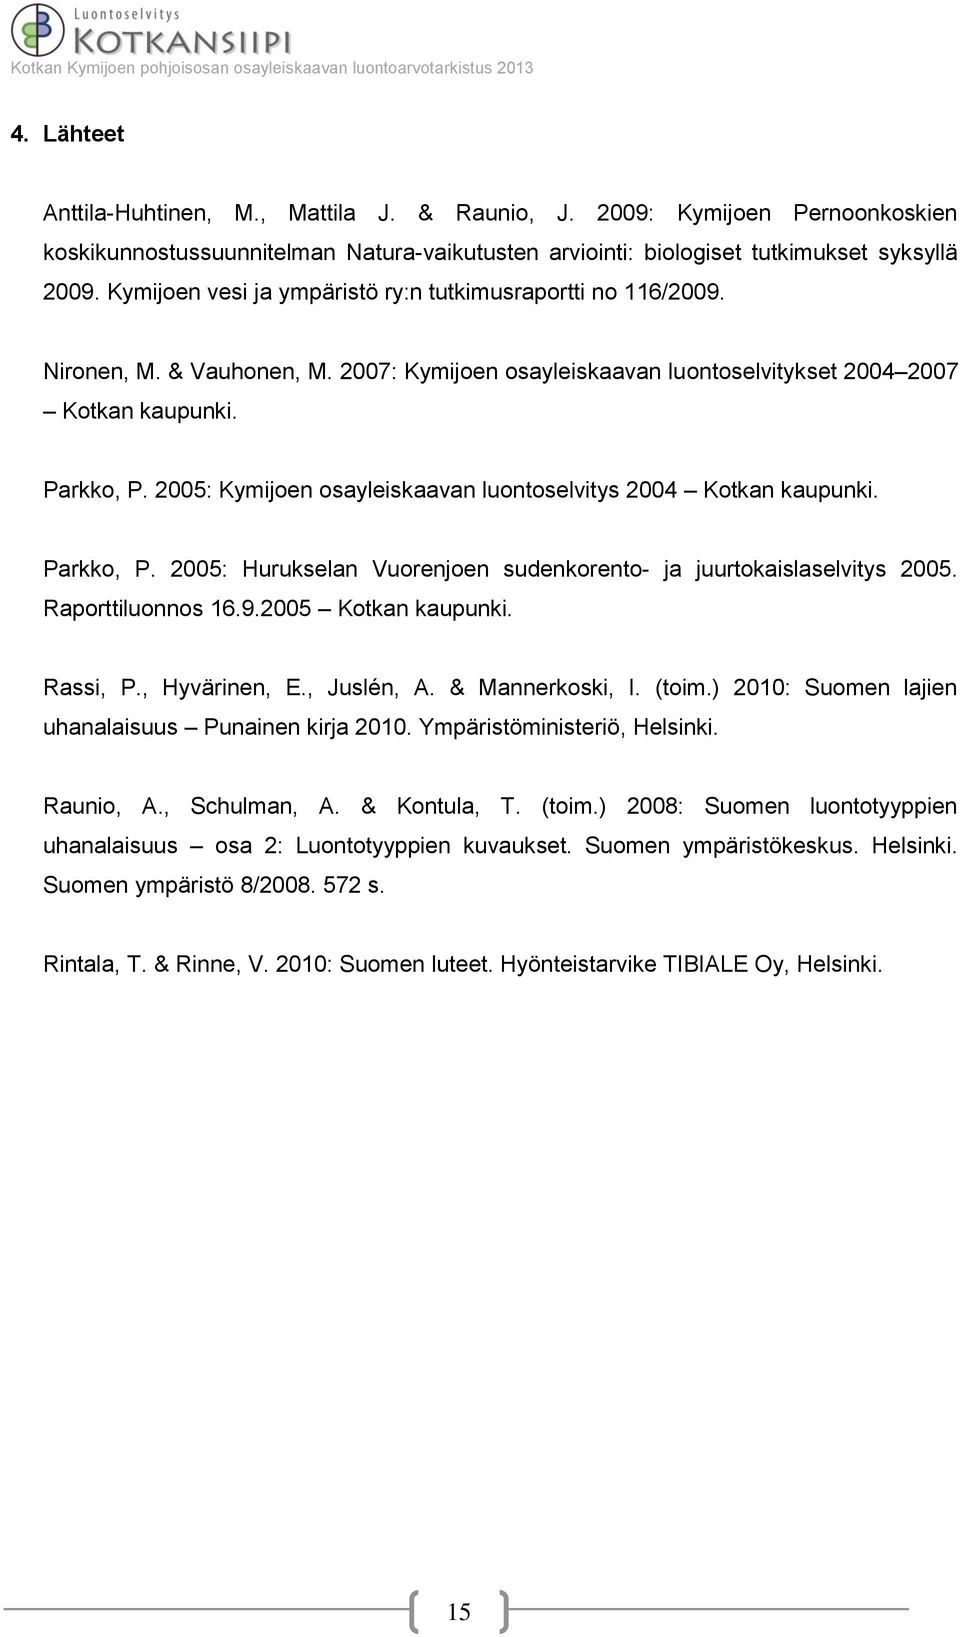 2005: Kymijoen osayleiskaavan luontoselvitys 2004 Kotkan kaupunki. Parkko, P. 2005: Hurukselan Vuorenjoen sudenkorento- ja juurtokaislaselvitys 2005. Raporttiluonnos 16.9.2005 Kotkan kaupunki.